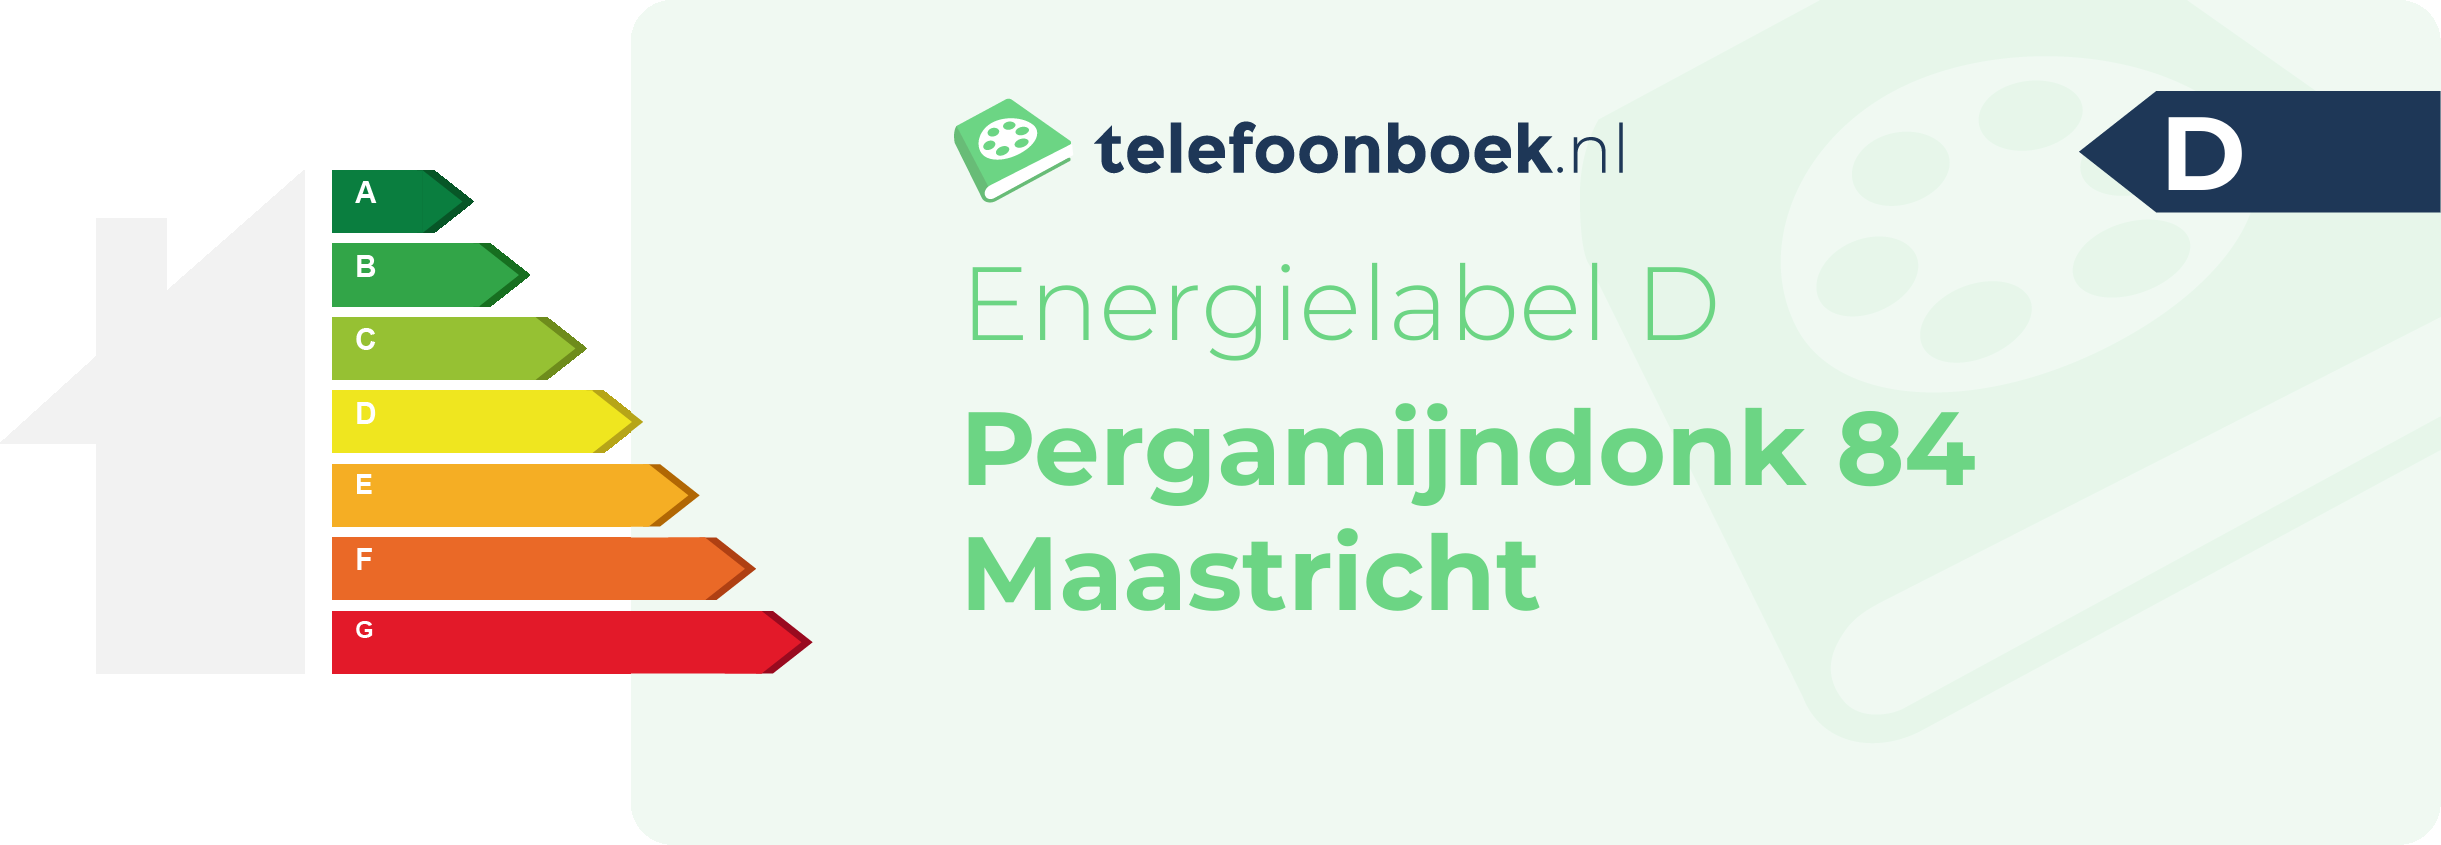 Energielabel Pergamijndonk 84 Maastricht